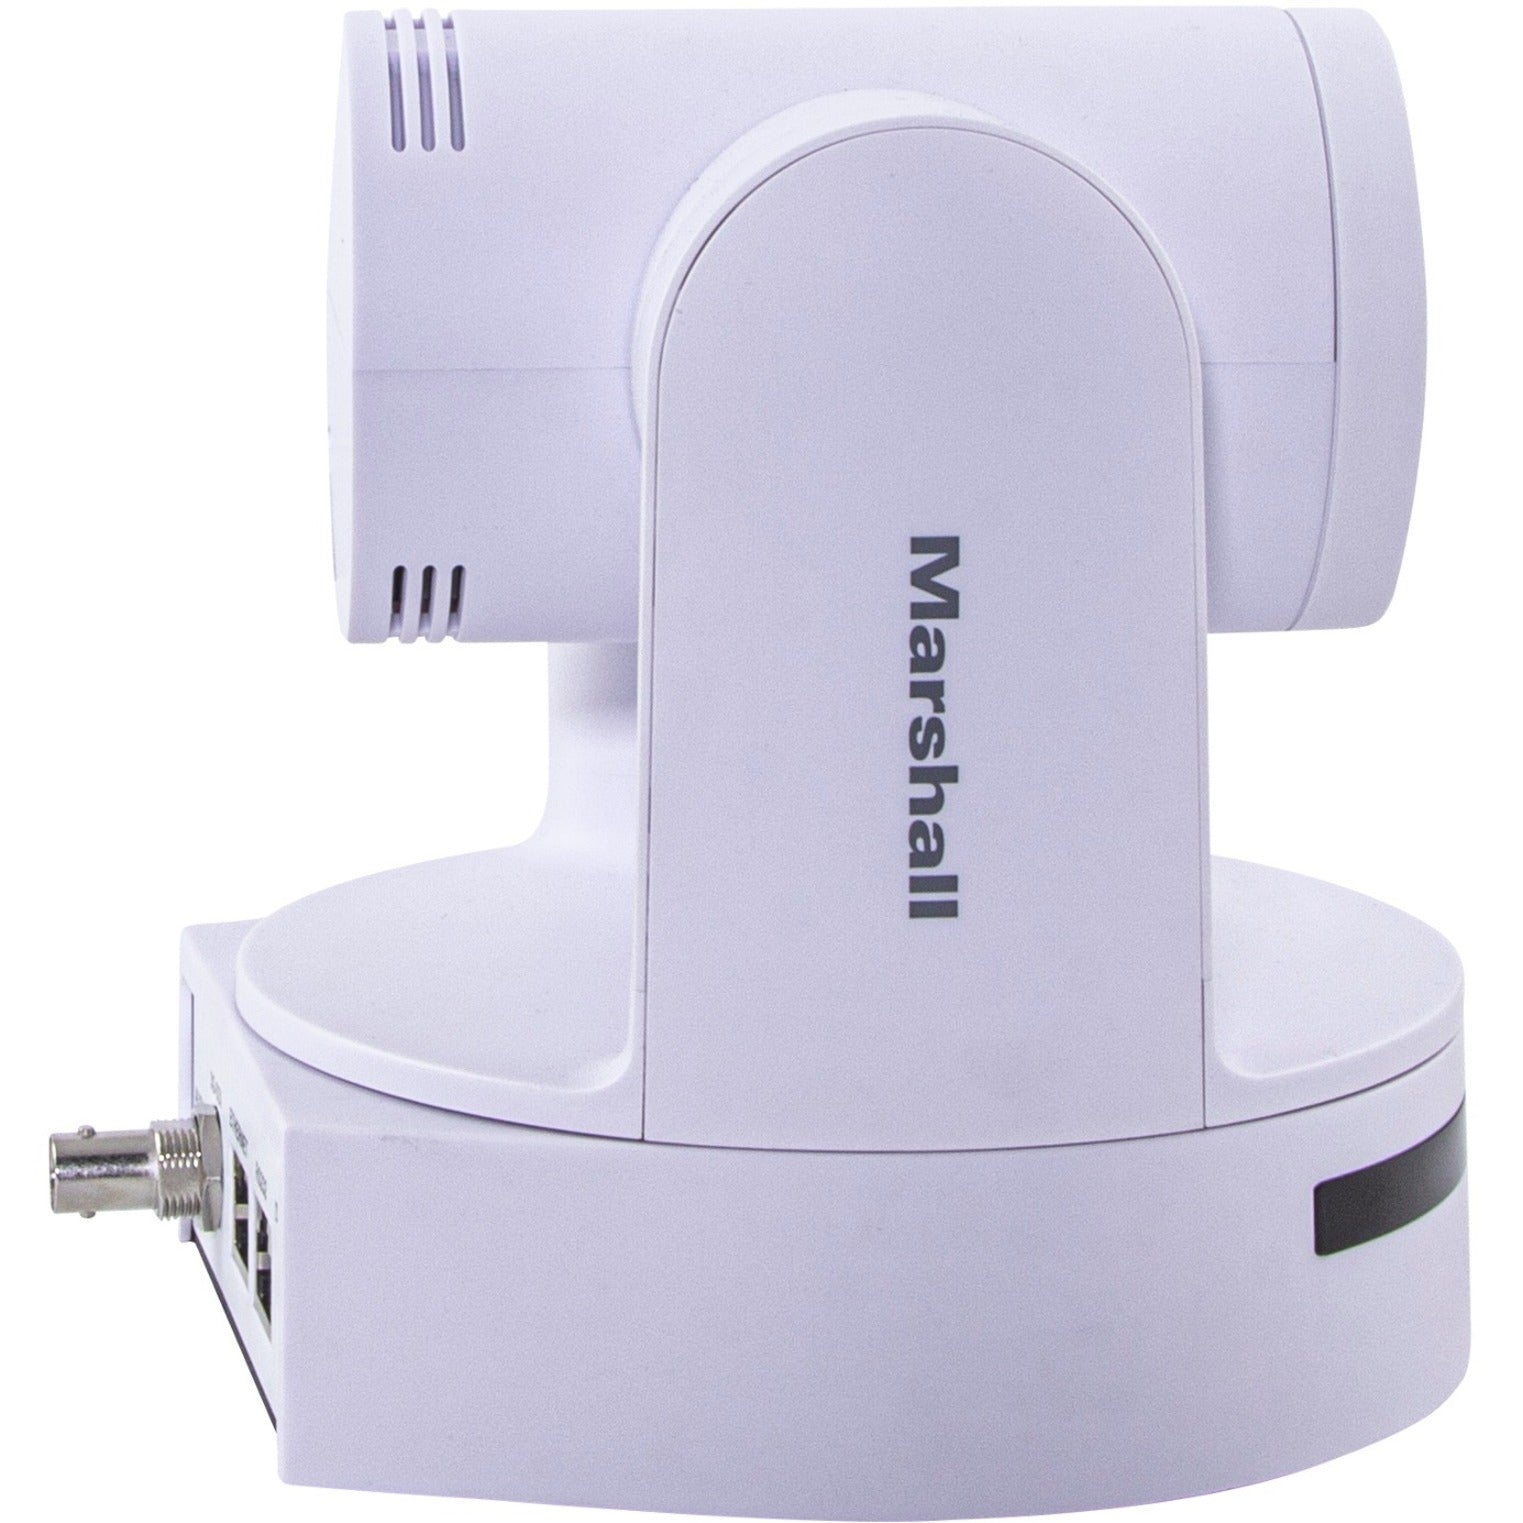 Marshall CV605WH 5x HD60 IP PTZ Camera, 3G/HD-SDI, H.265/H.264, 1920 x 1080, Indoor/Outdoor